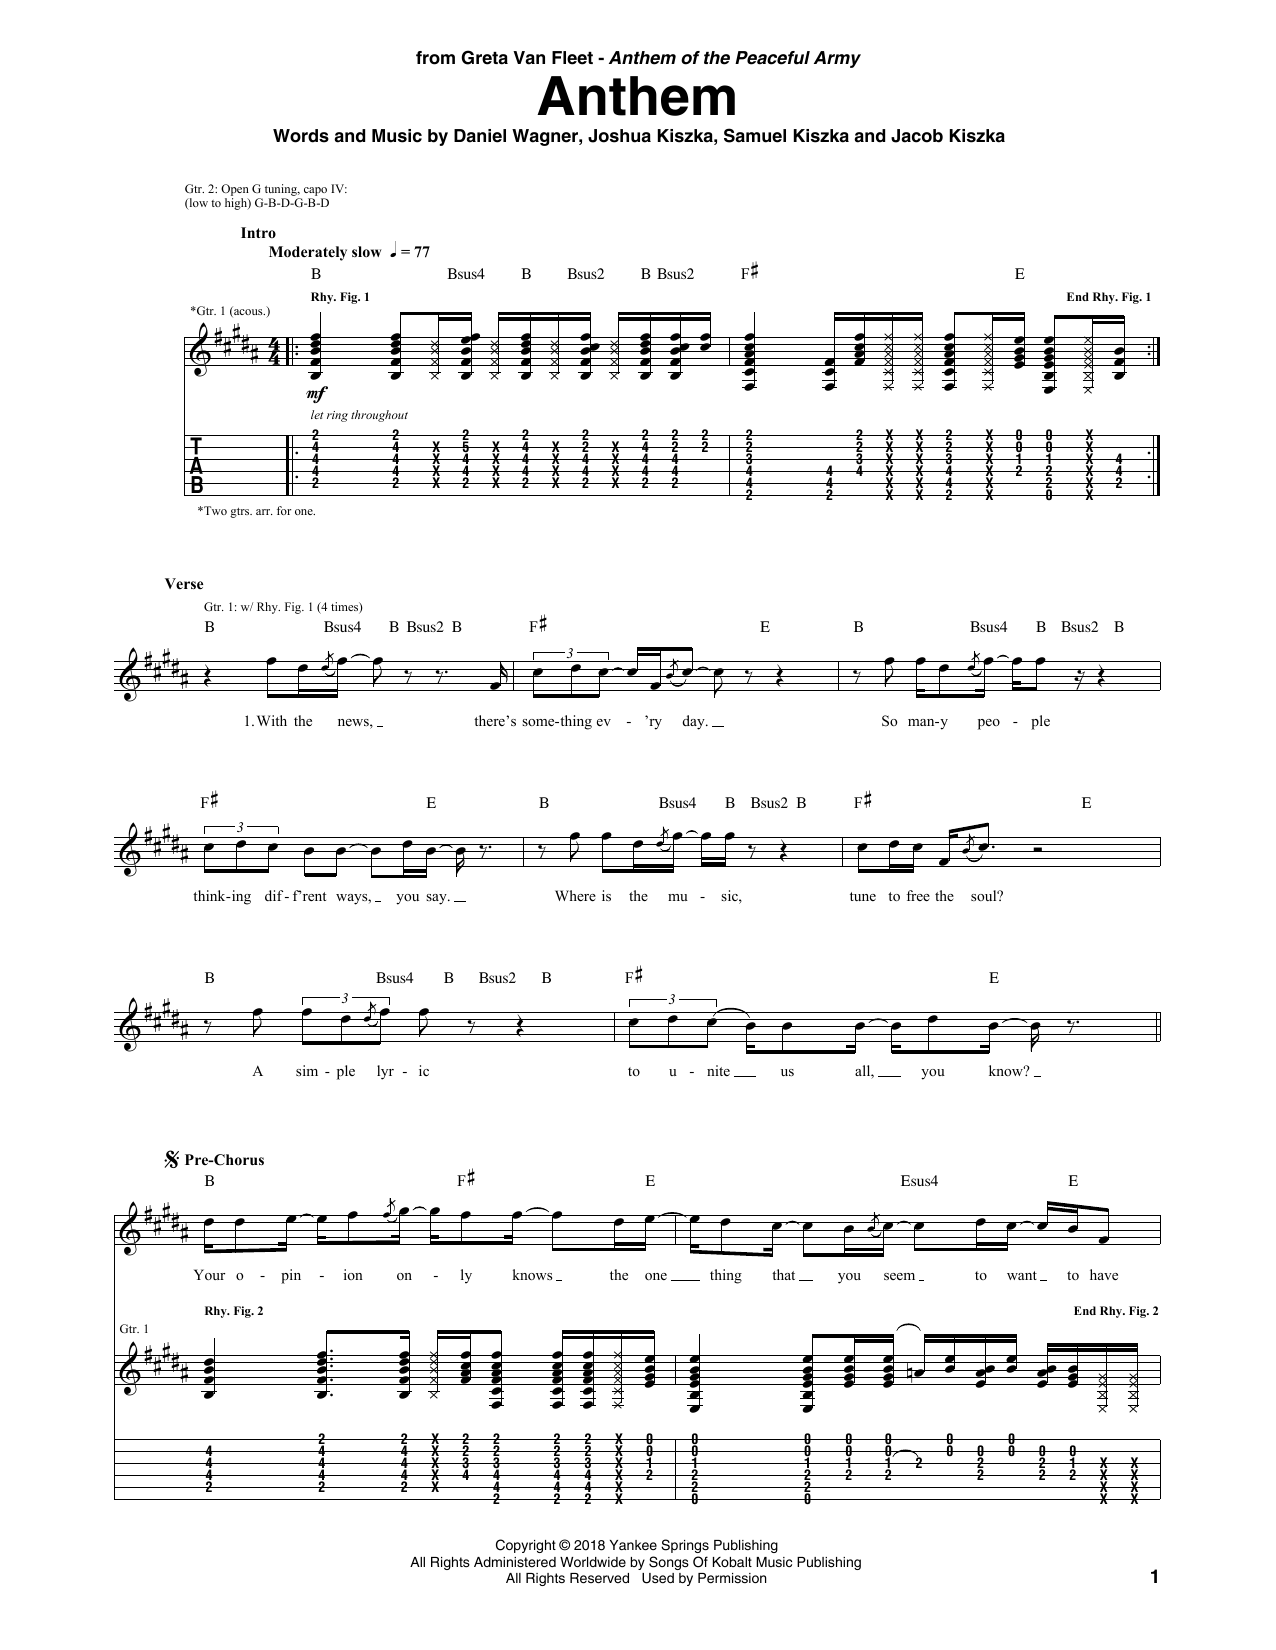 Greta Van Fleet Anthem Sheet Music Notes & Chords for Guitar Tab - Download or Print PDF